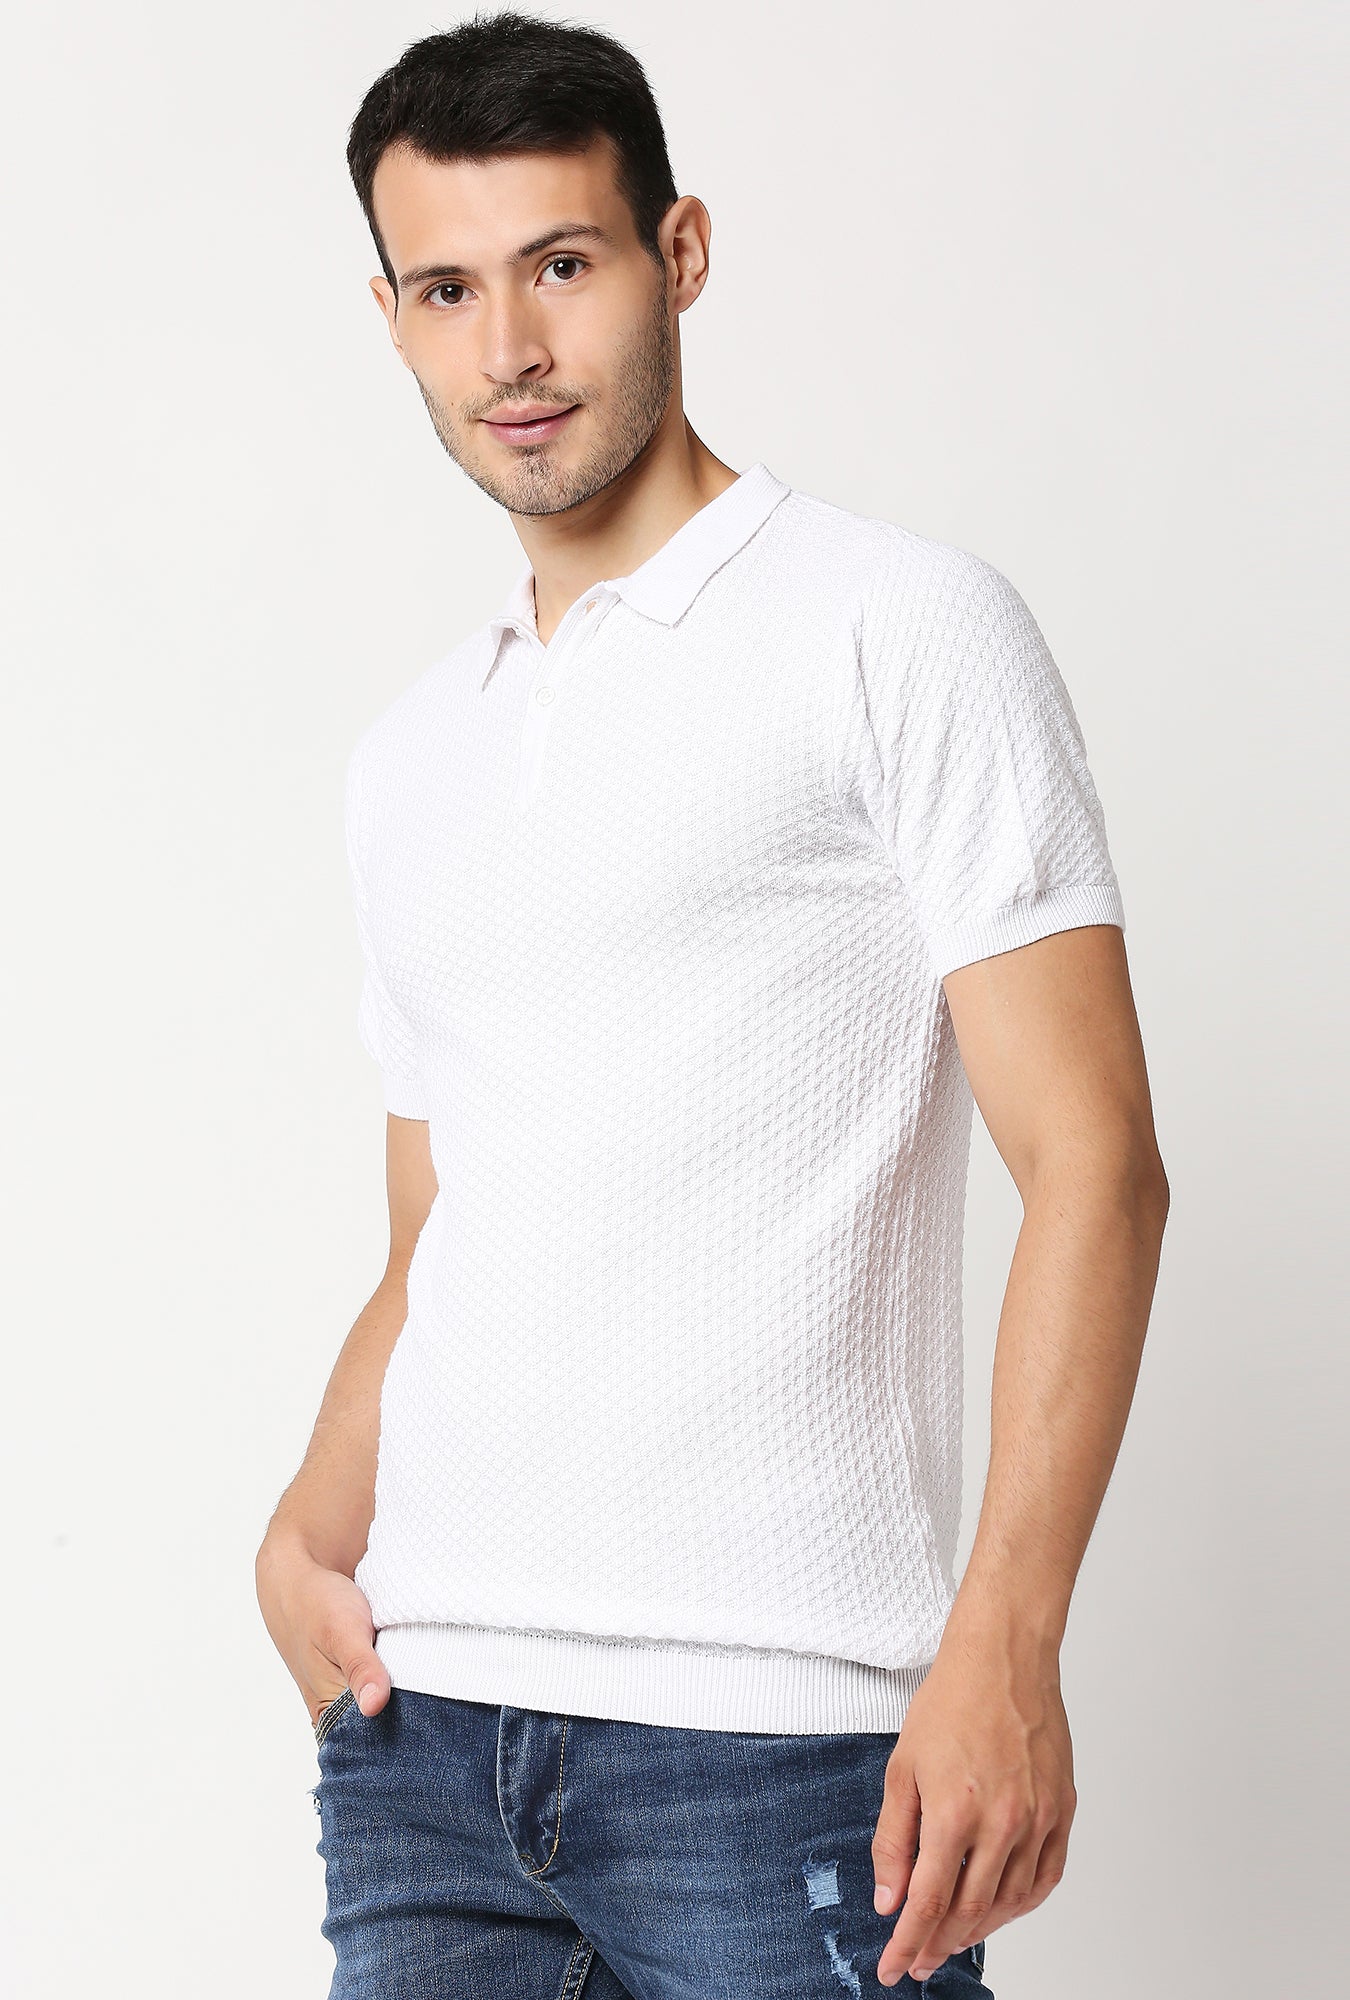 Fostino Beta White Polo T-Shirt - Fostino - T-Shirts